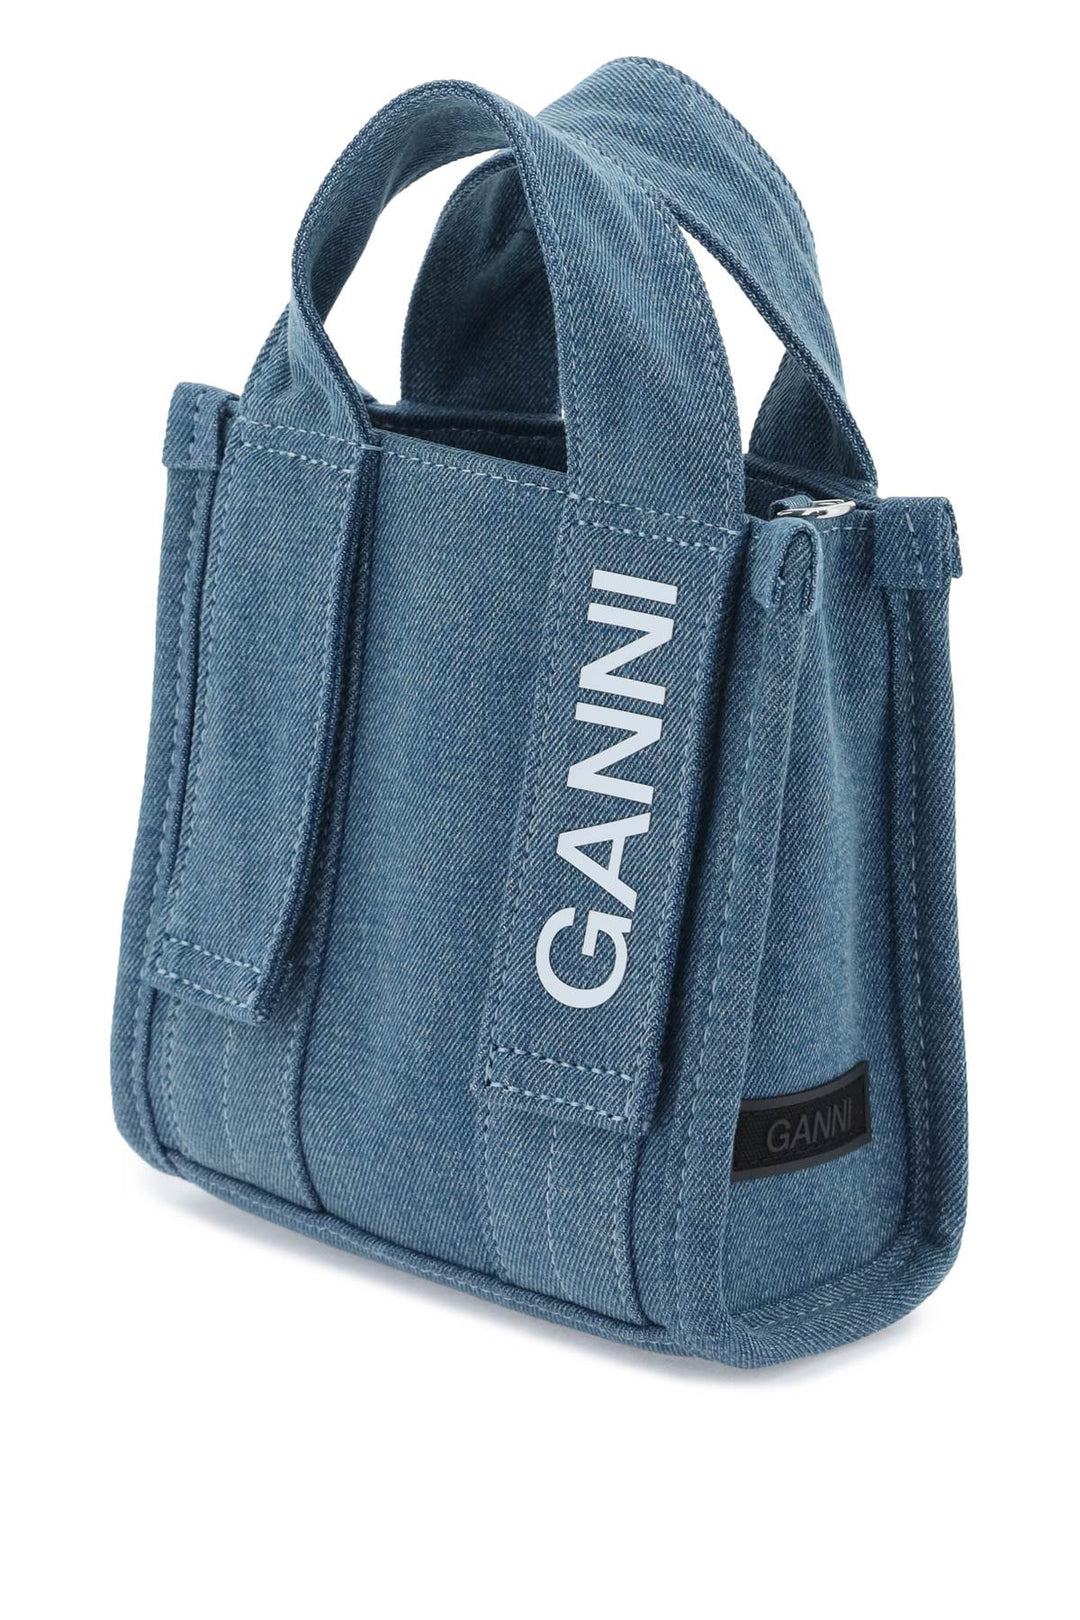 Ganni Denim Tech Mini Tote Bag   Blu